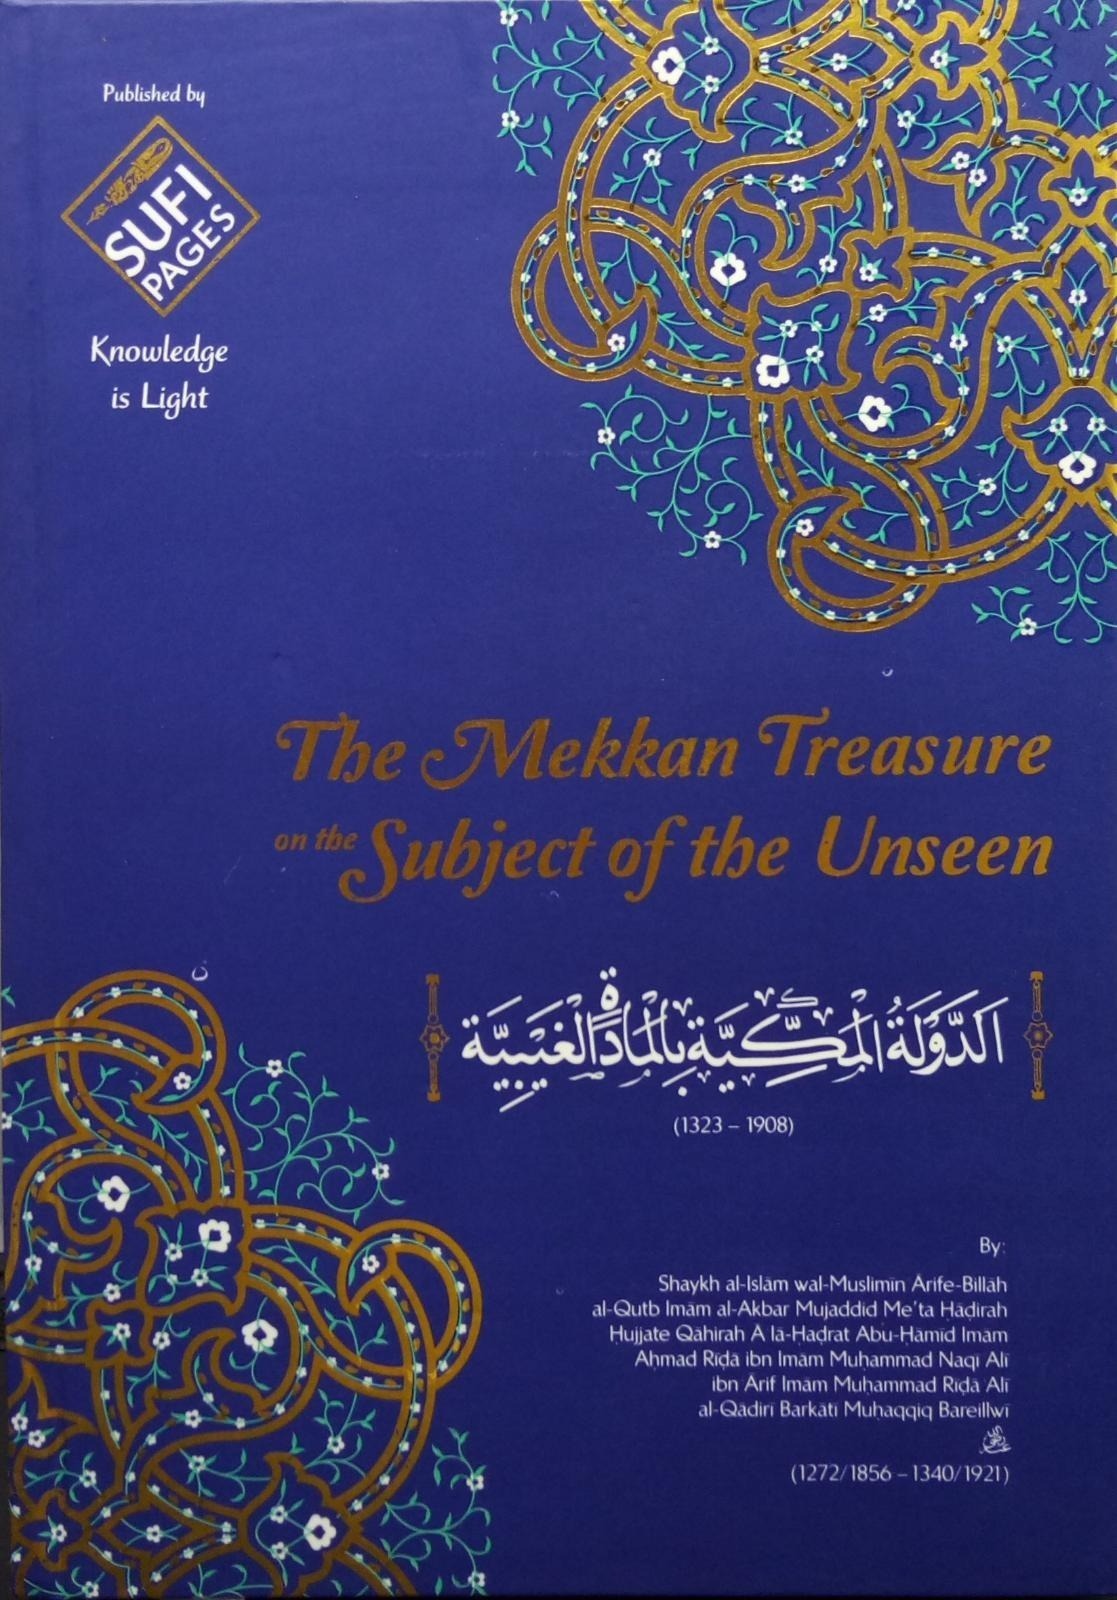 The Mekkan Treasure on the Subject of the Unseen - Al-Dowlat al-Makkiyah